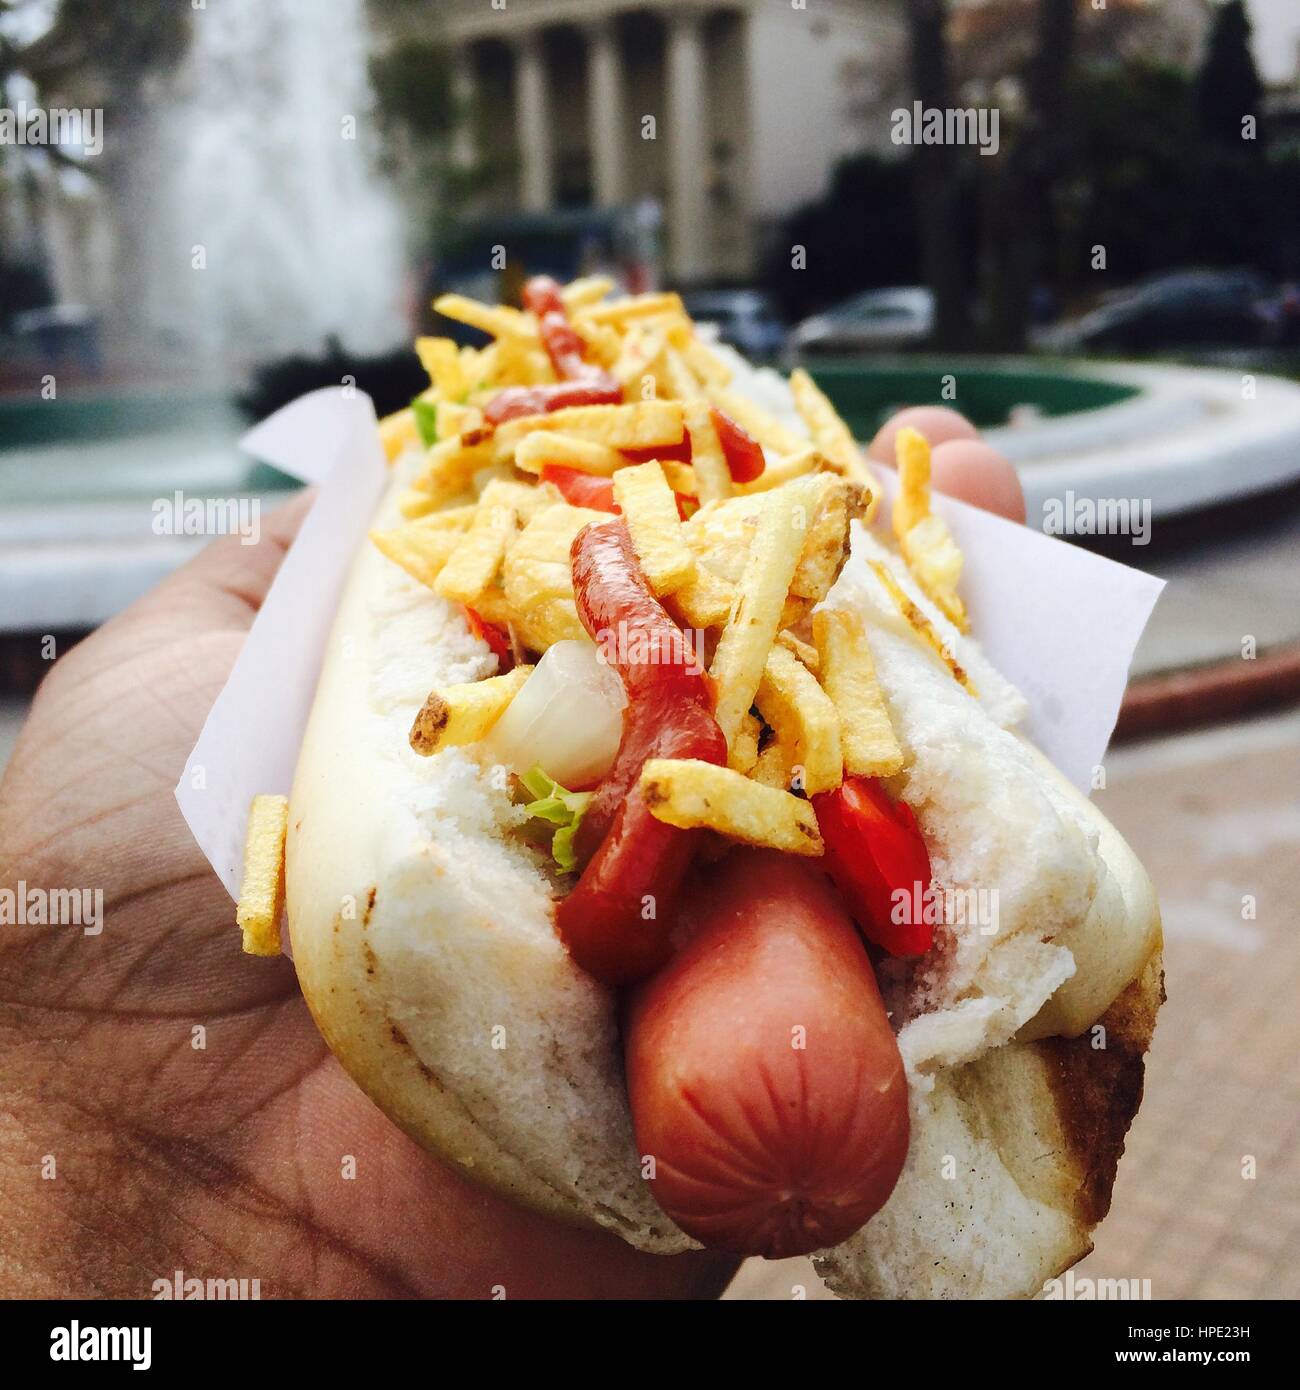 A delicious hot-dog Stock Photo